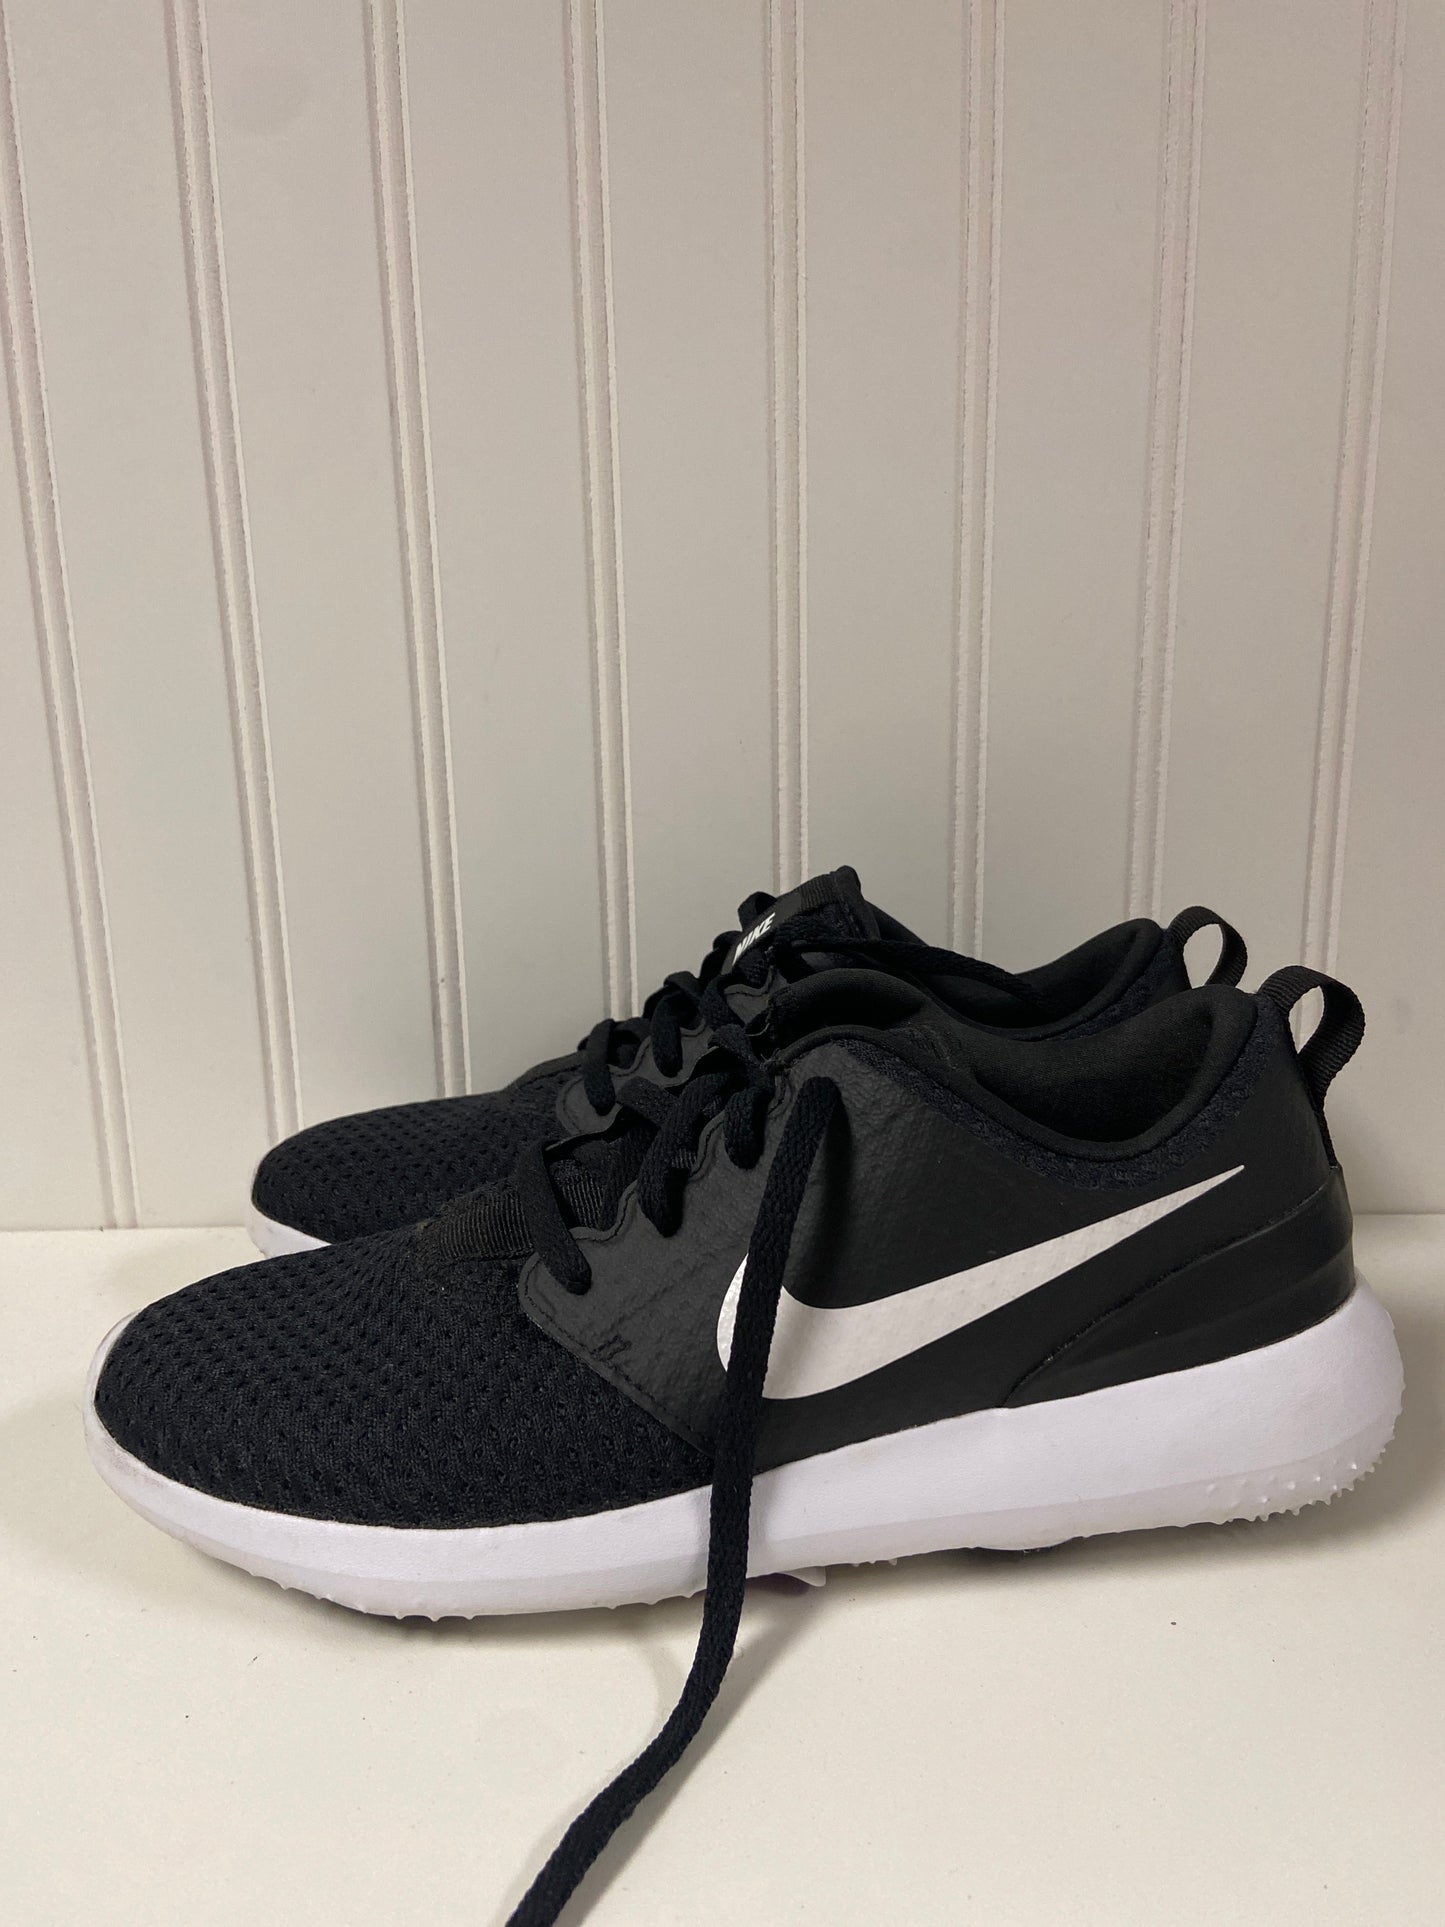 Black & White Shoes Athletic Nike, Size 6.5